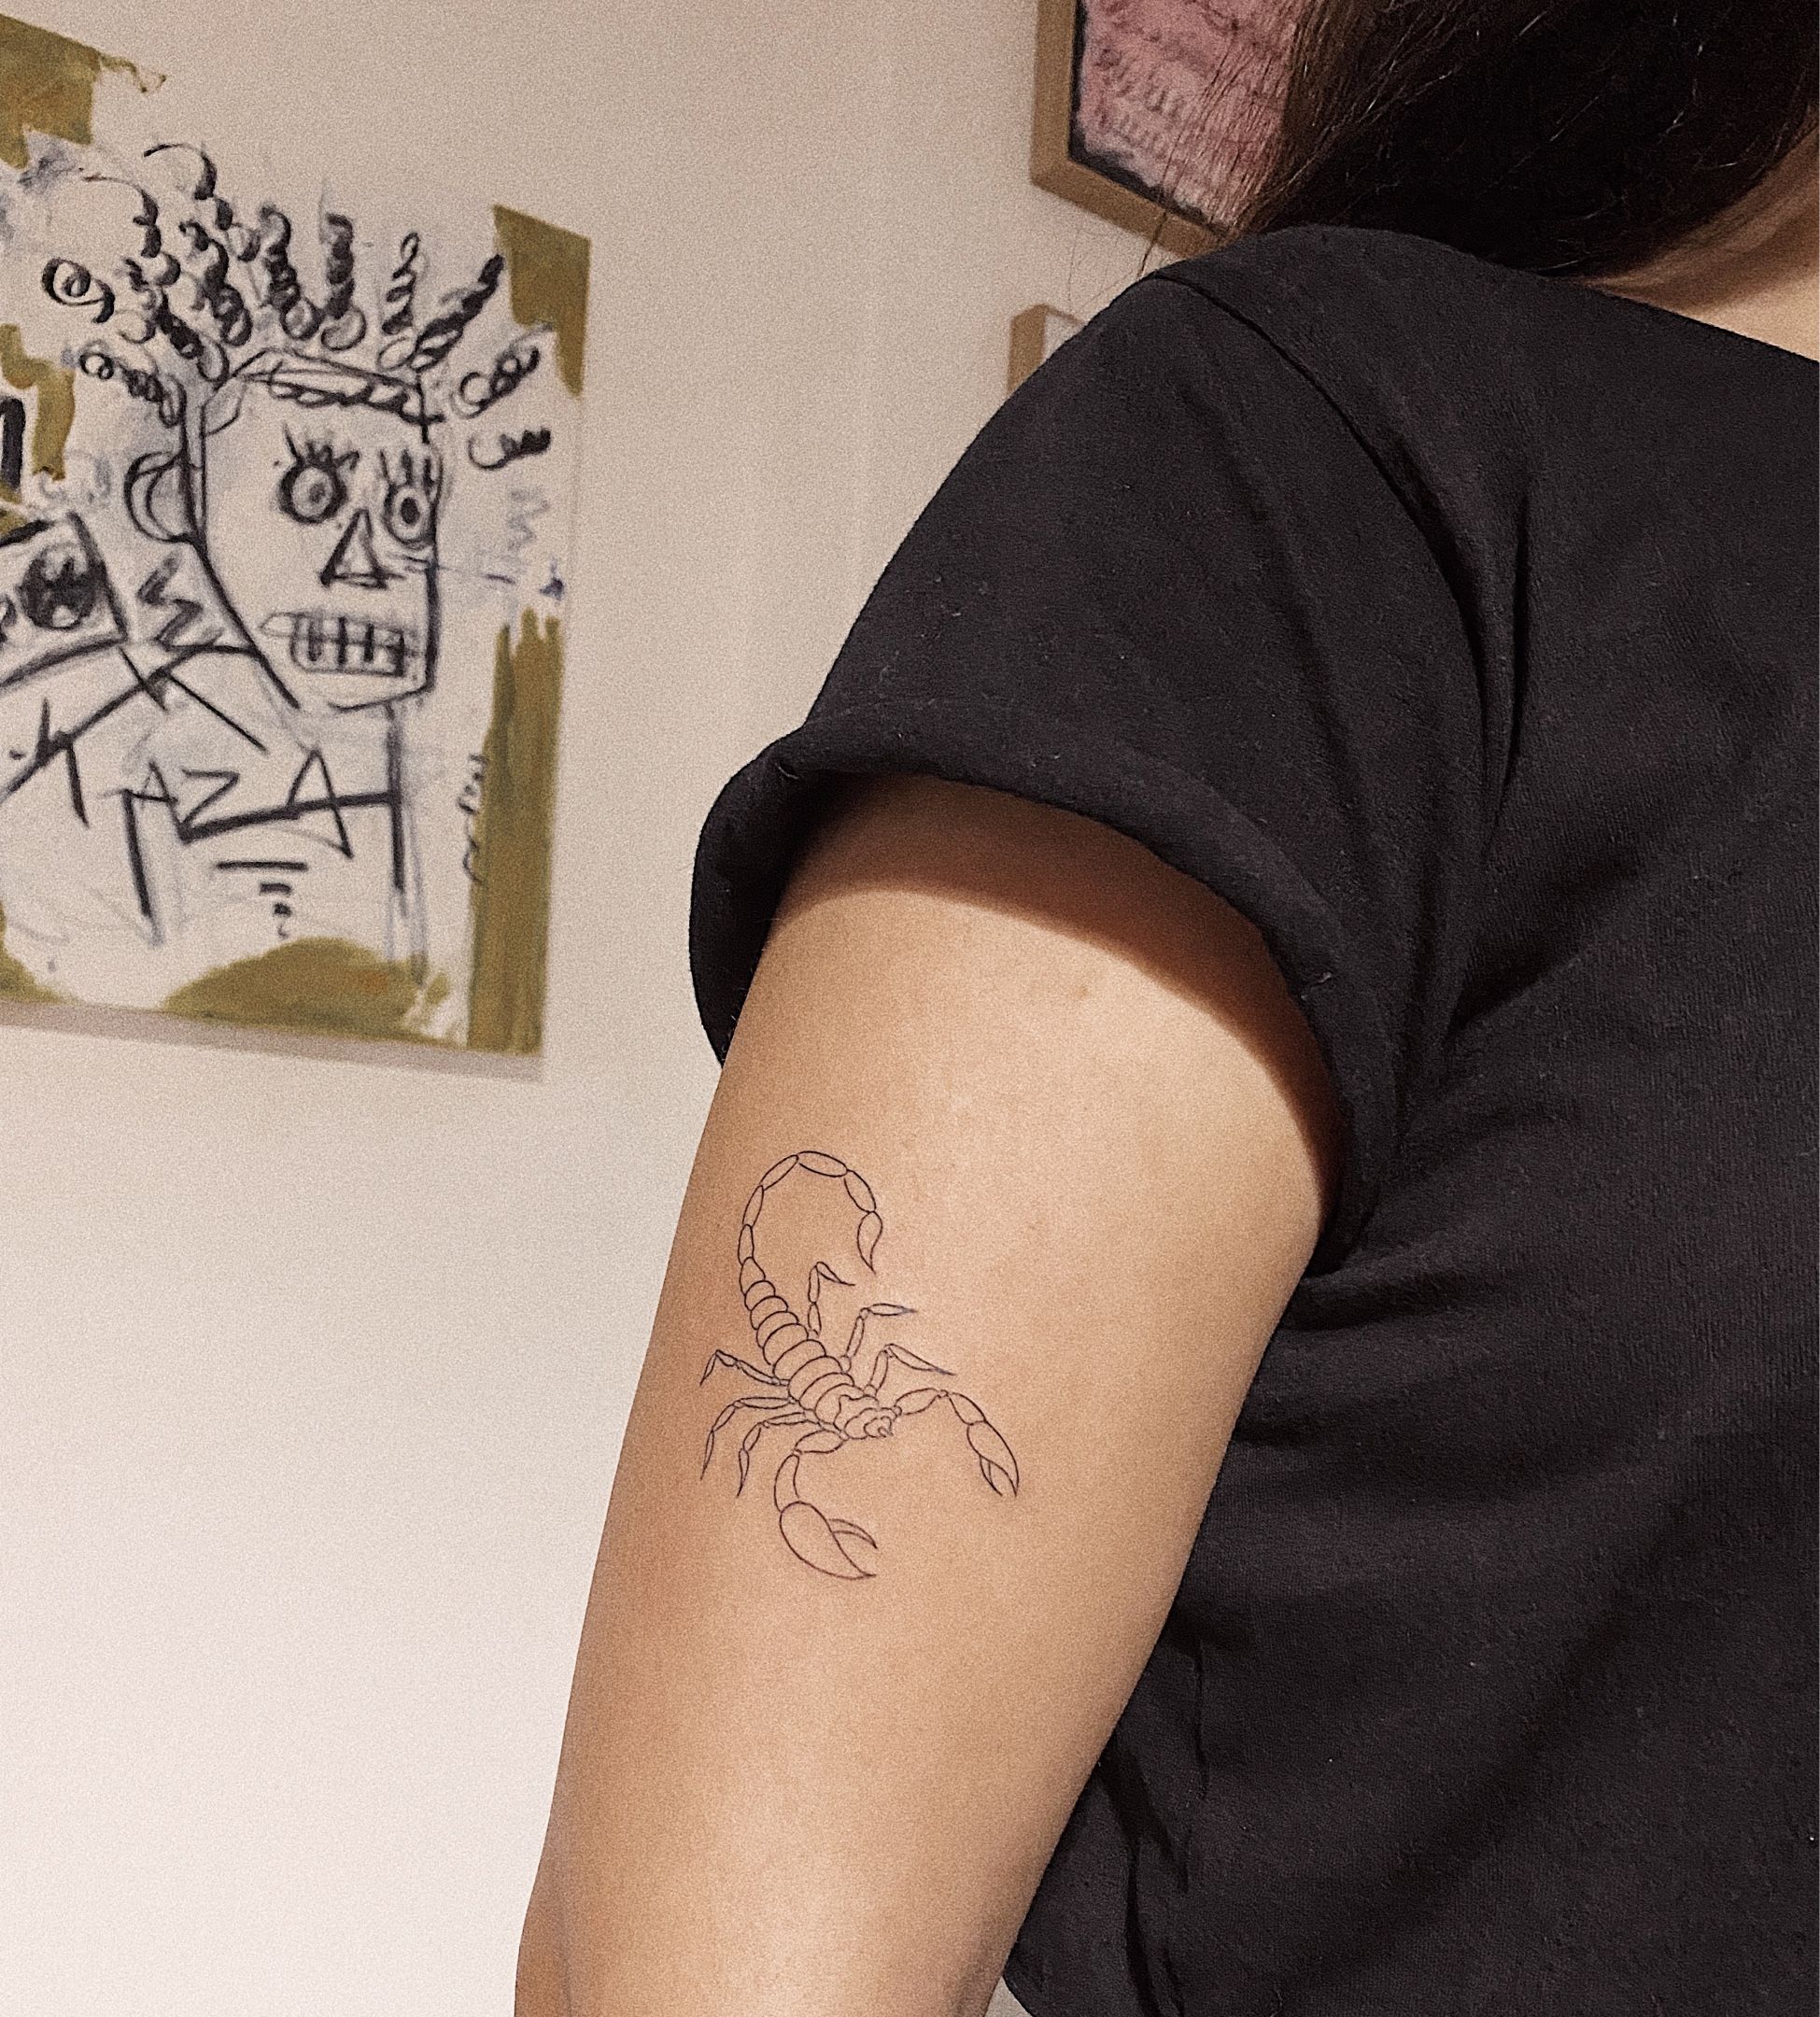 Scorpion tattoo | Tattoo ideen klein, Kleine tattoo ideen, Tattoo ideen